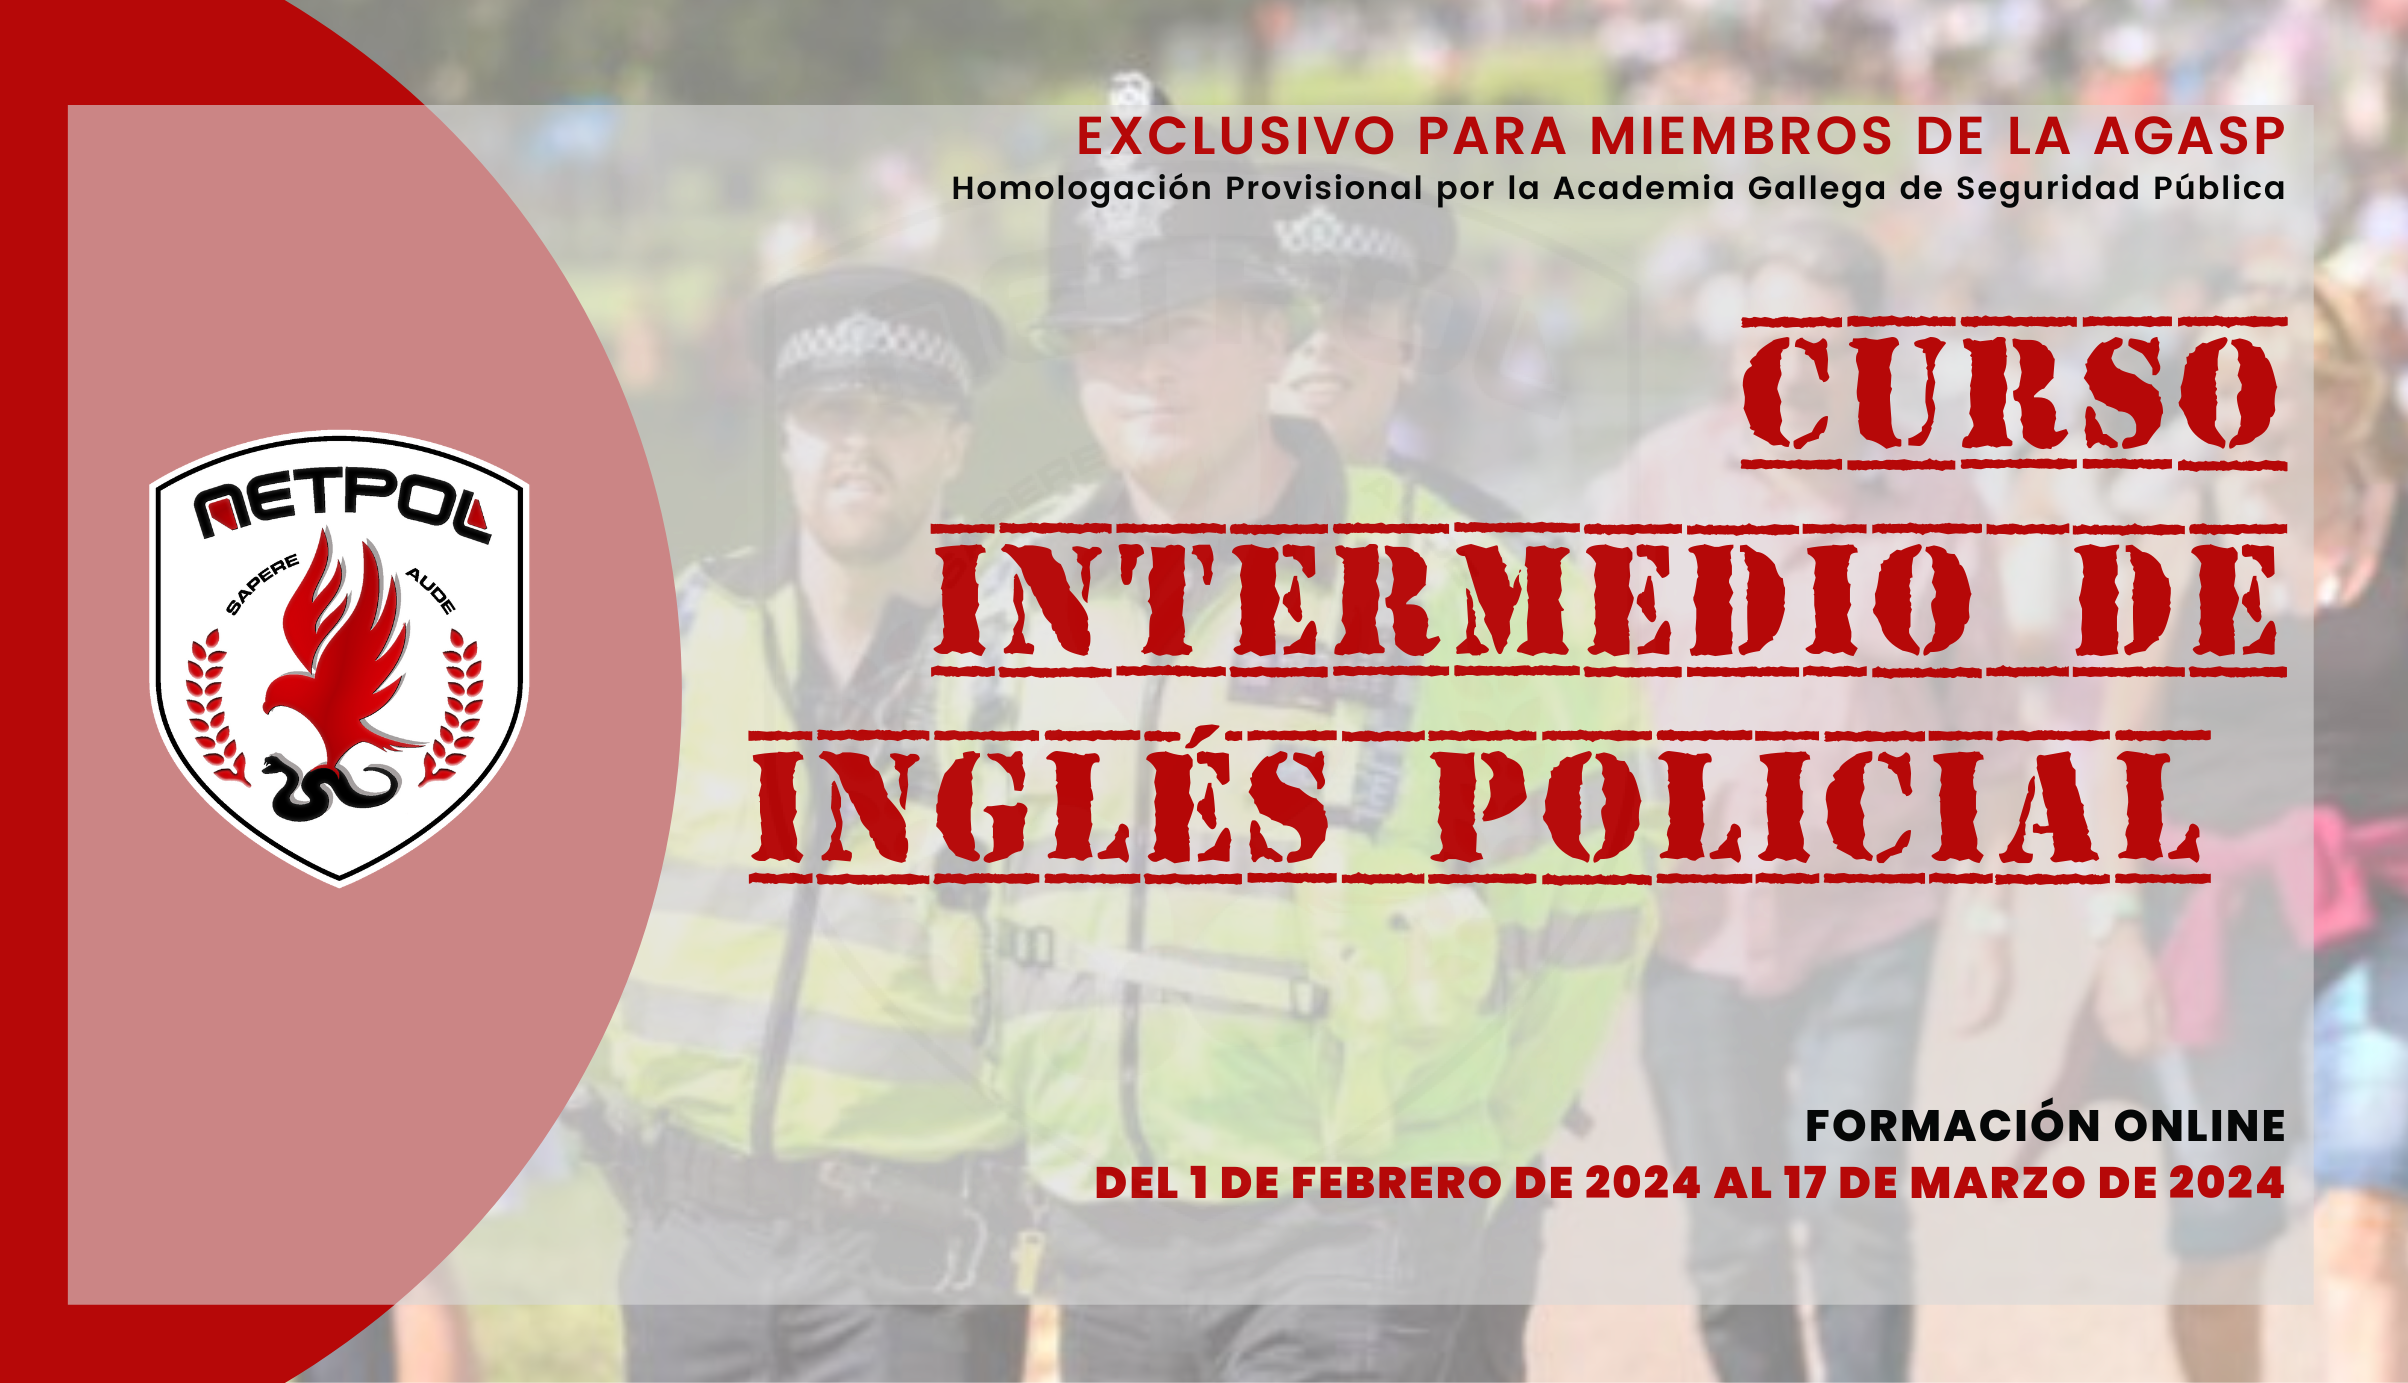 CURSO INTERMEDIO DE INGLÉS POLICIAL